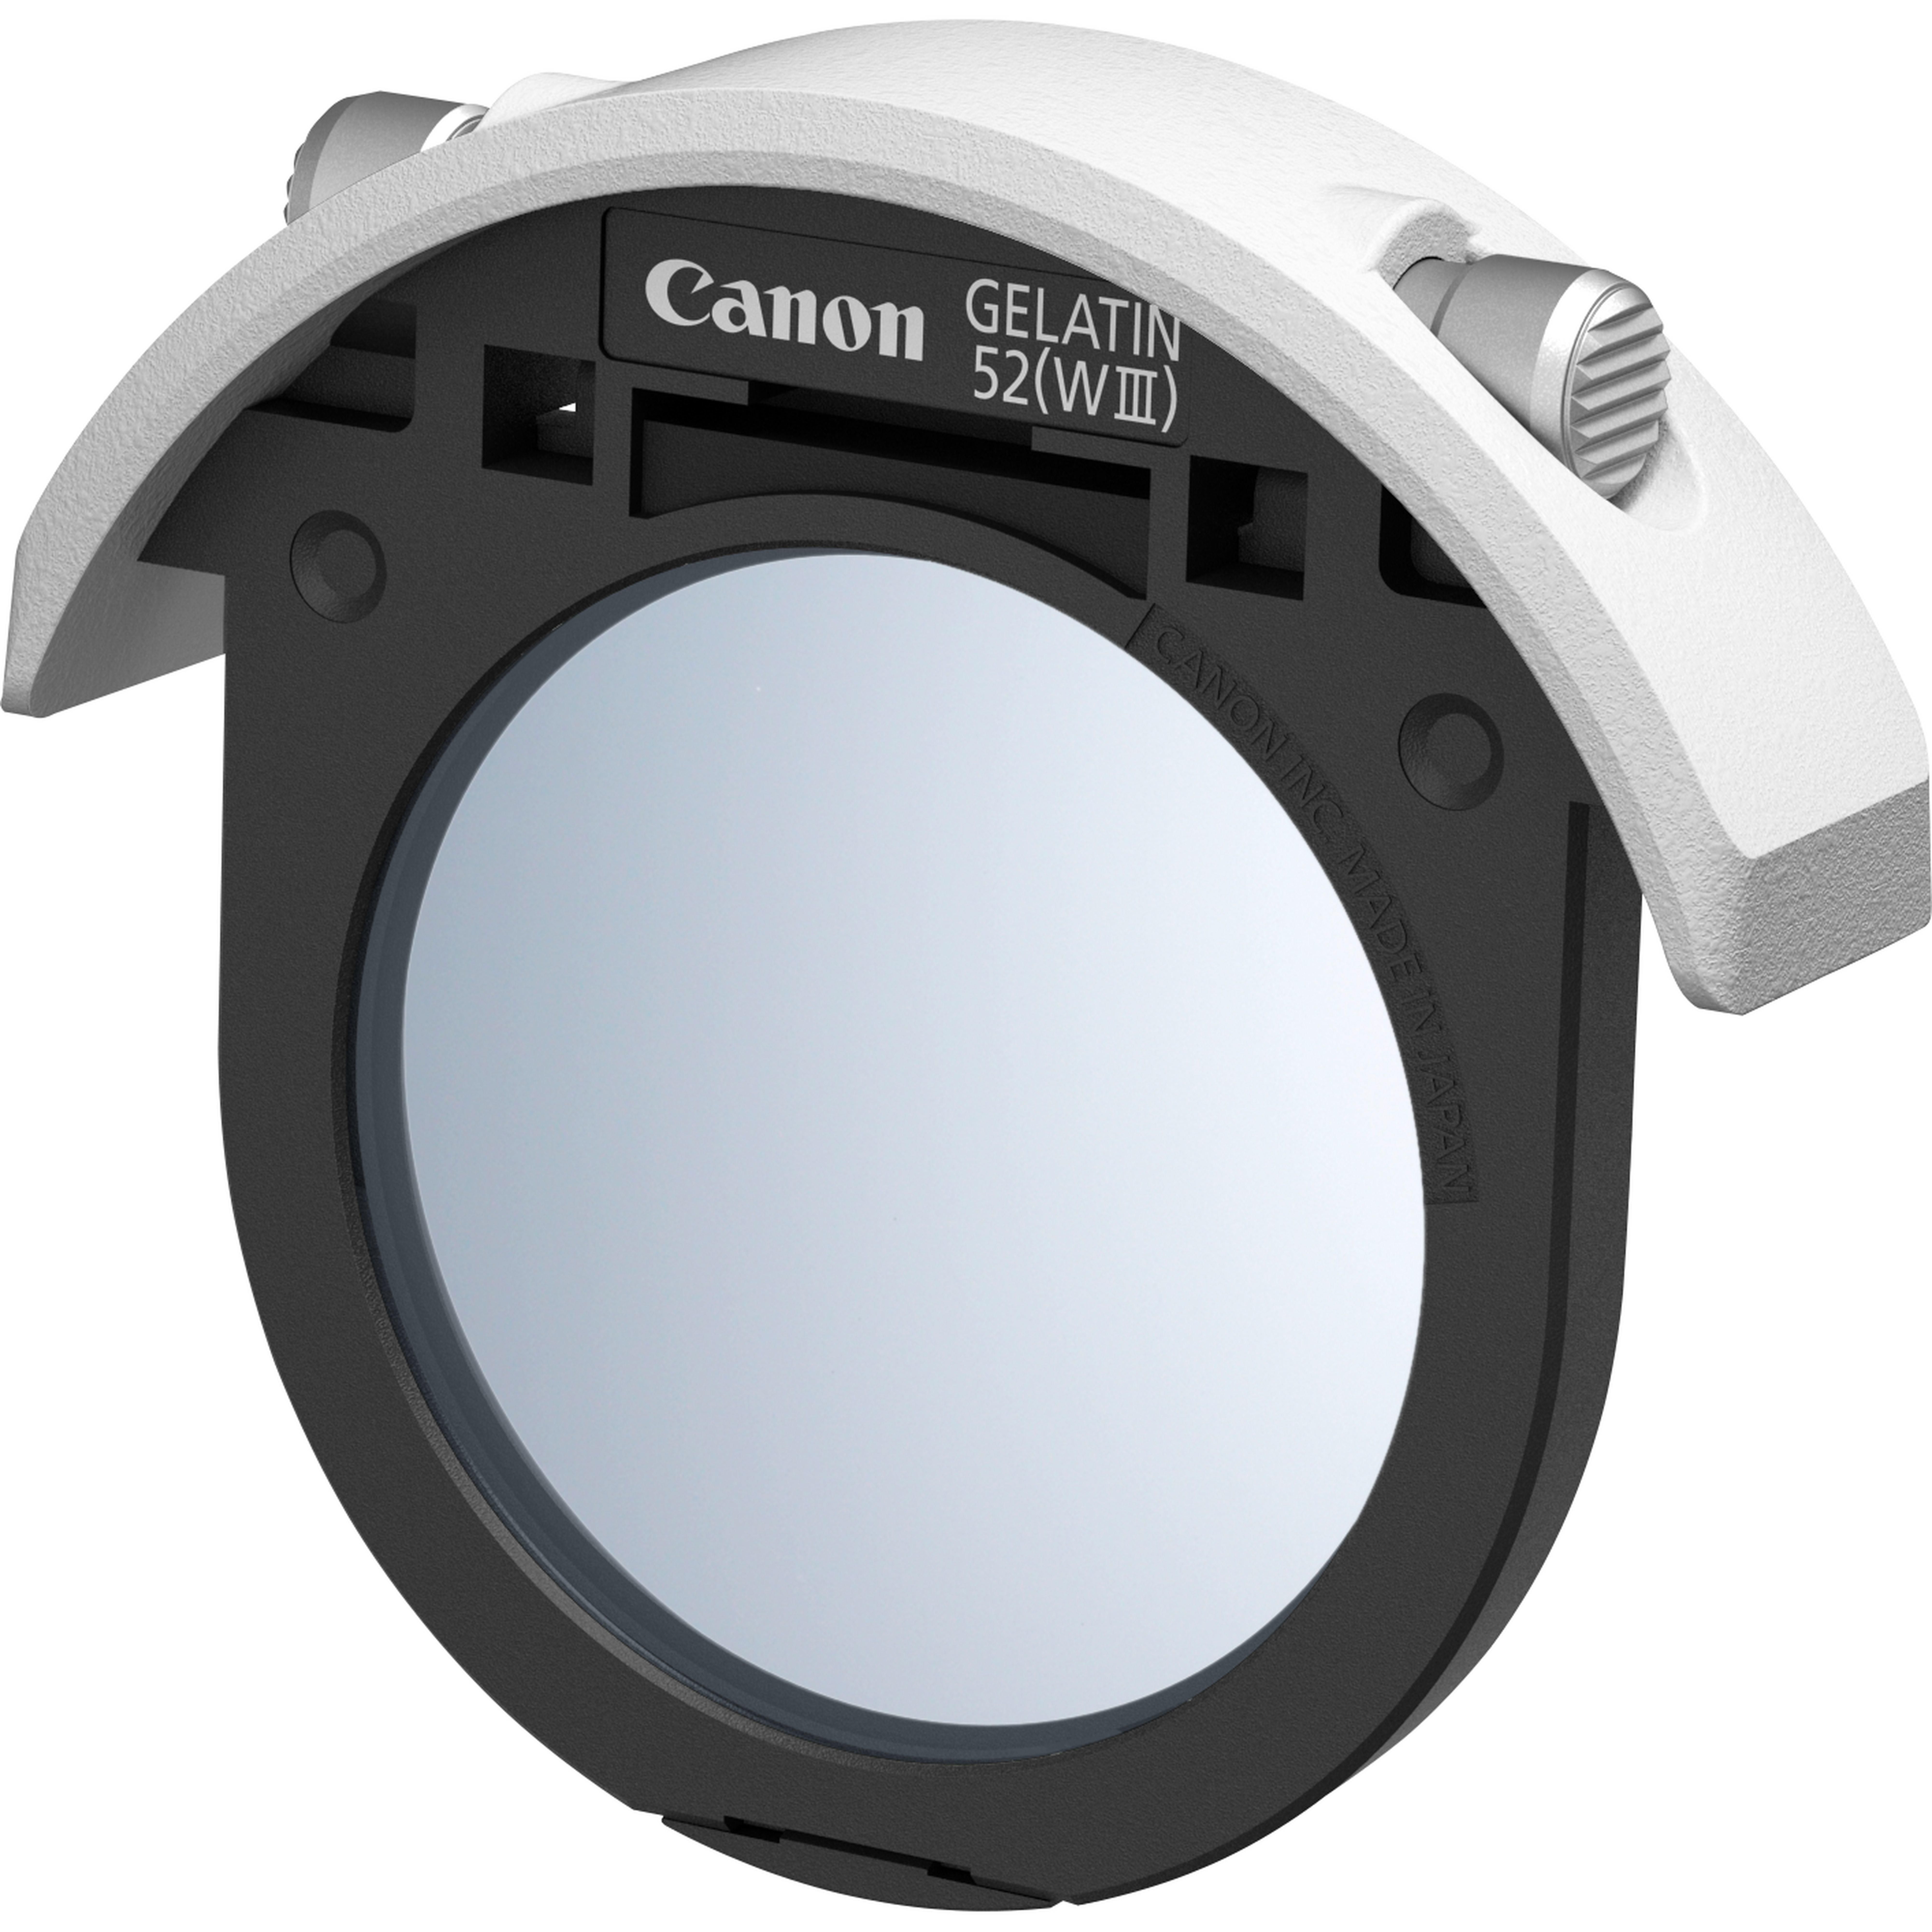 Canon Supporto In Gelatina Per Filtro Drop-In 52 (WIII) 3051c001 - Foto 1 di 1